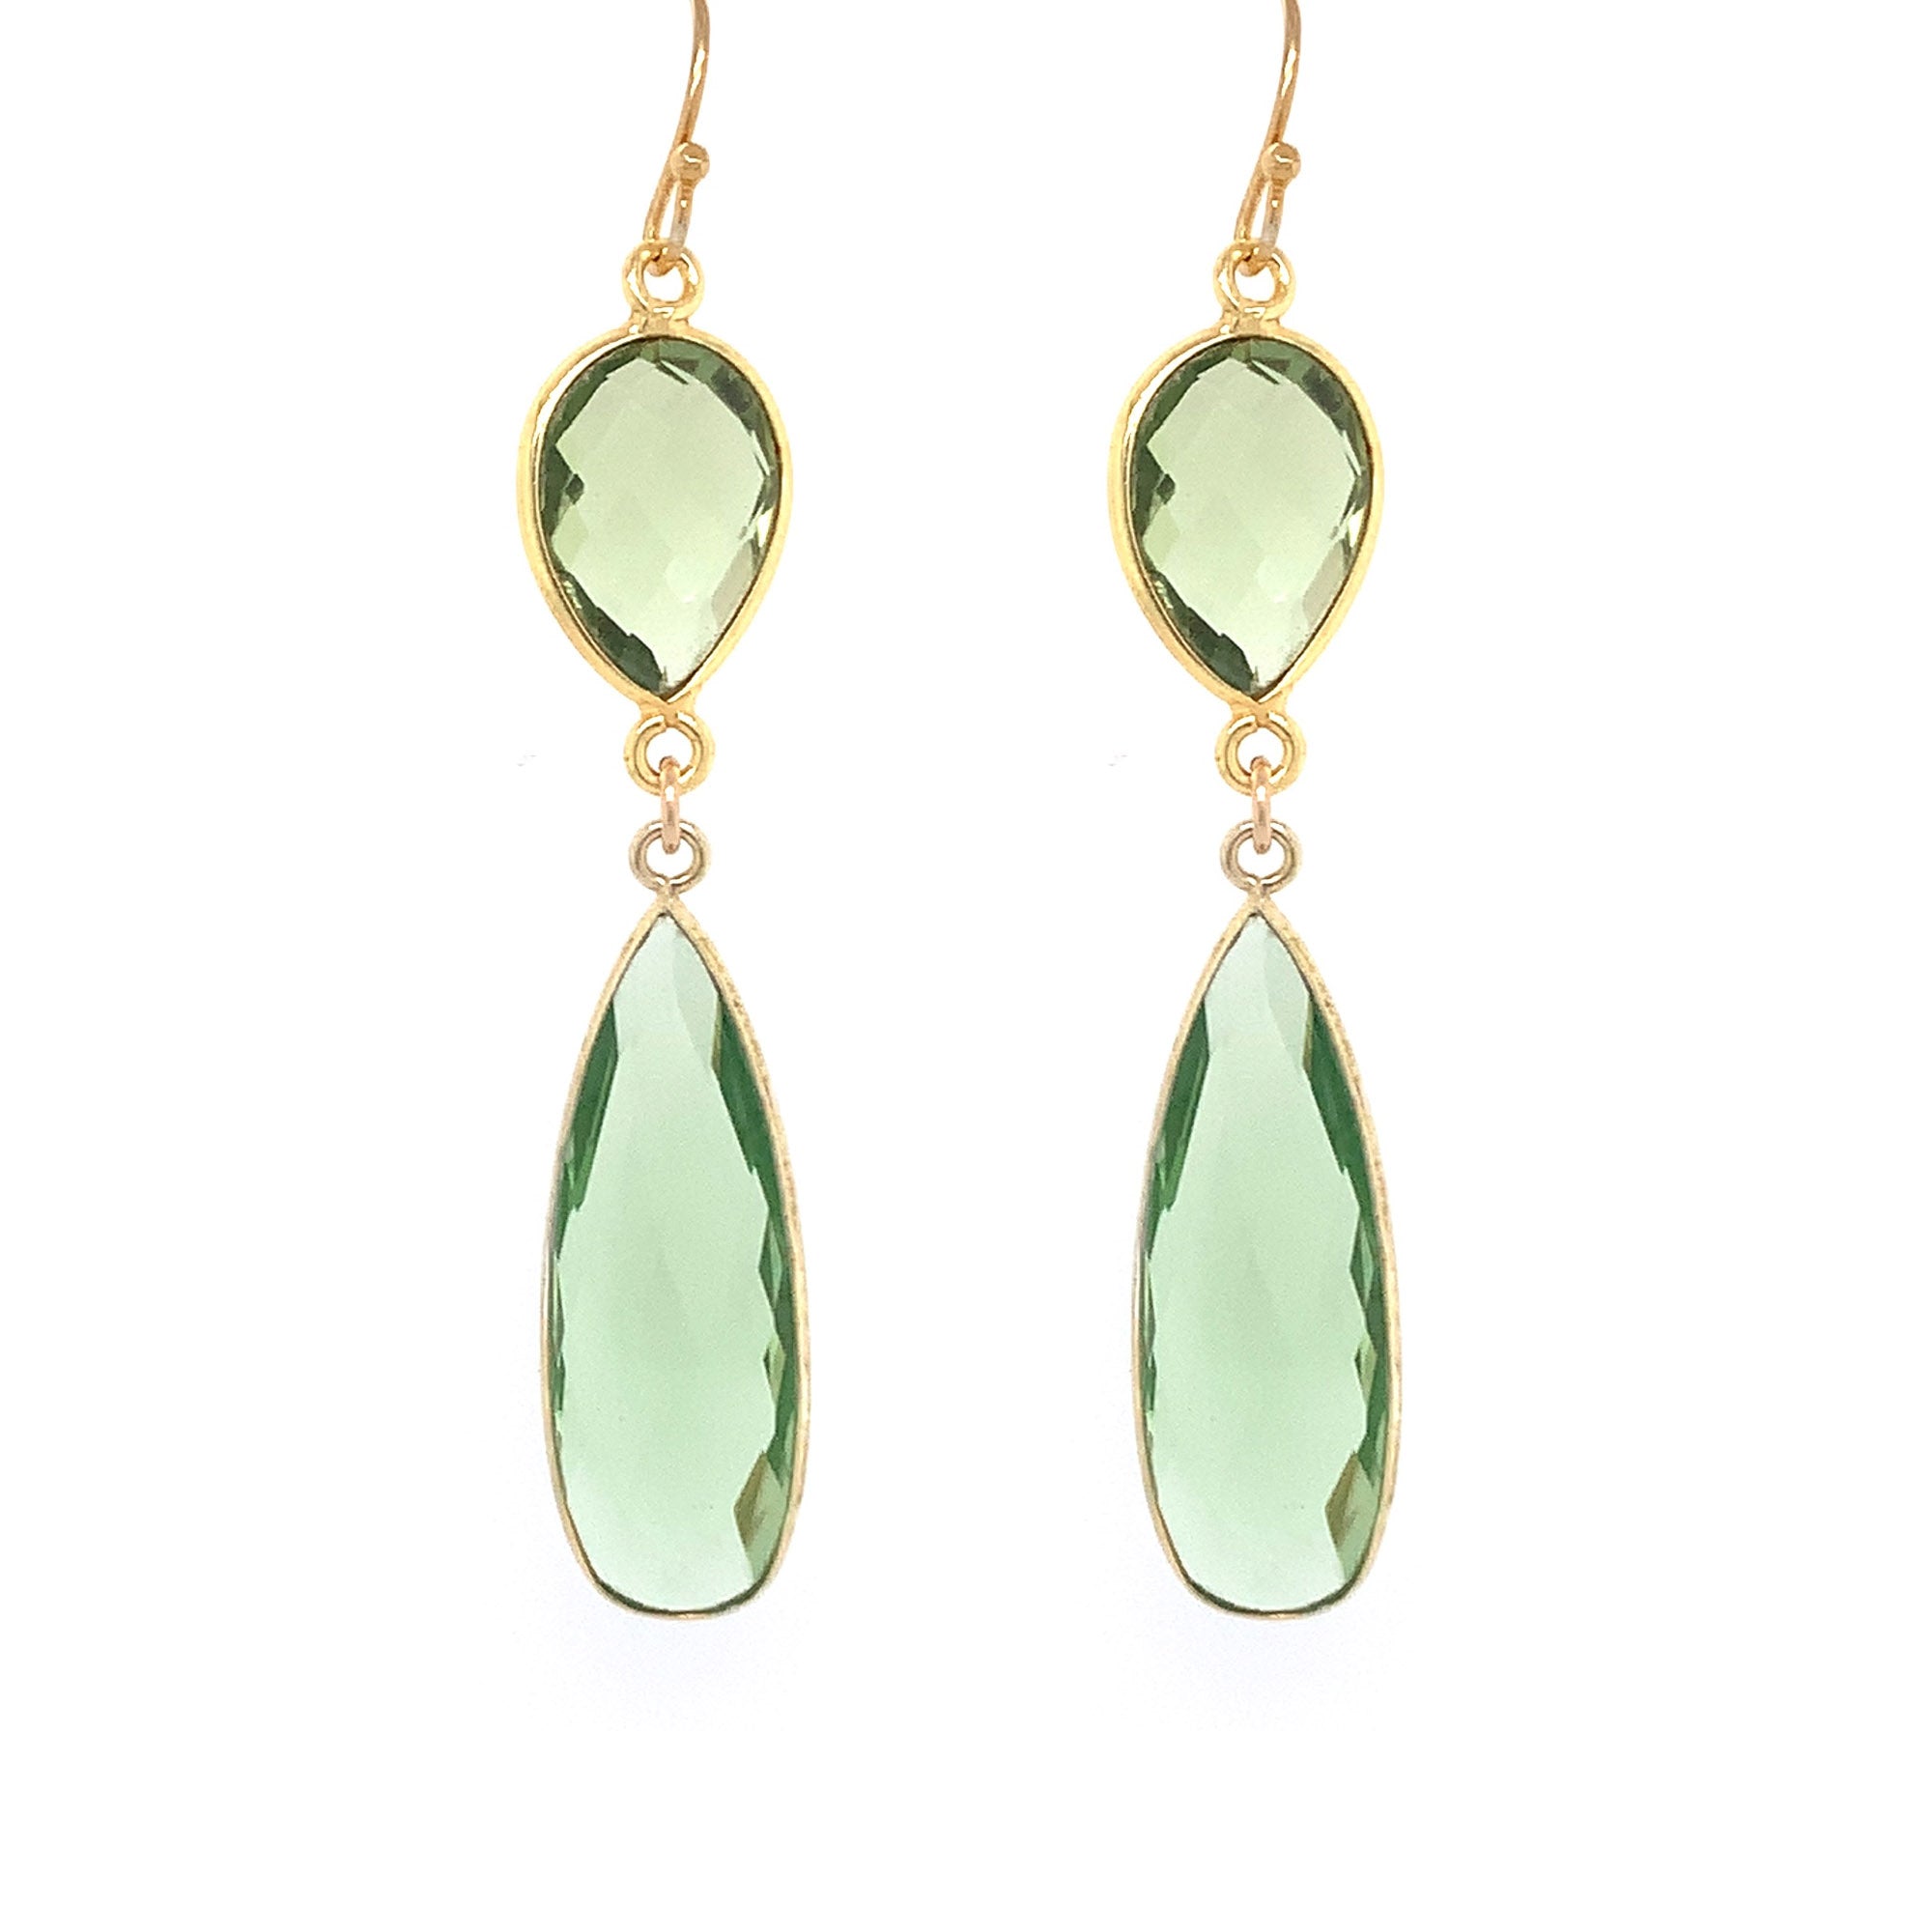 Green Amethyst Regal Double Earring Drops, Gold